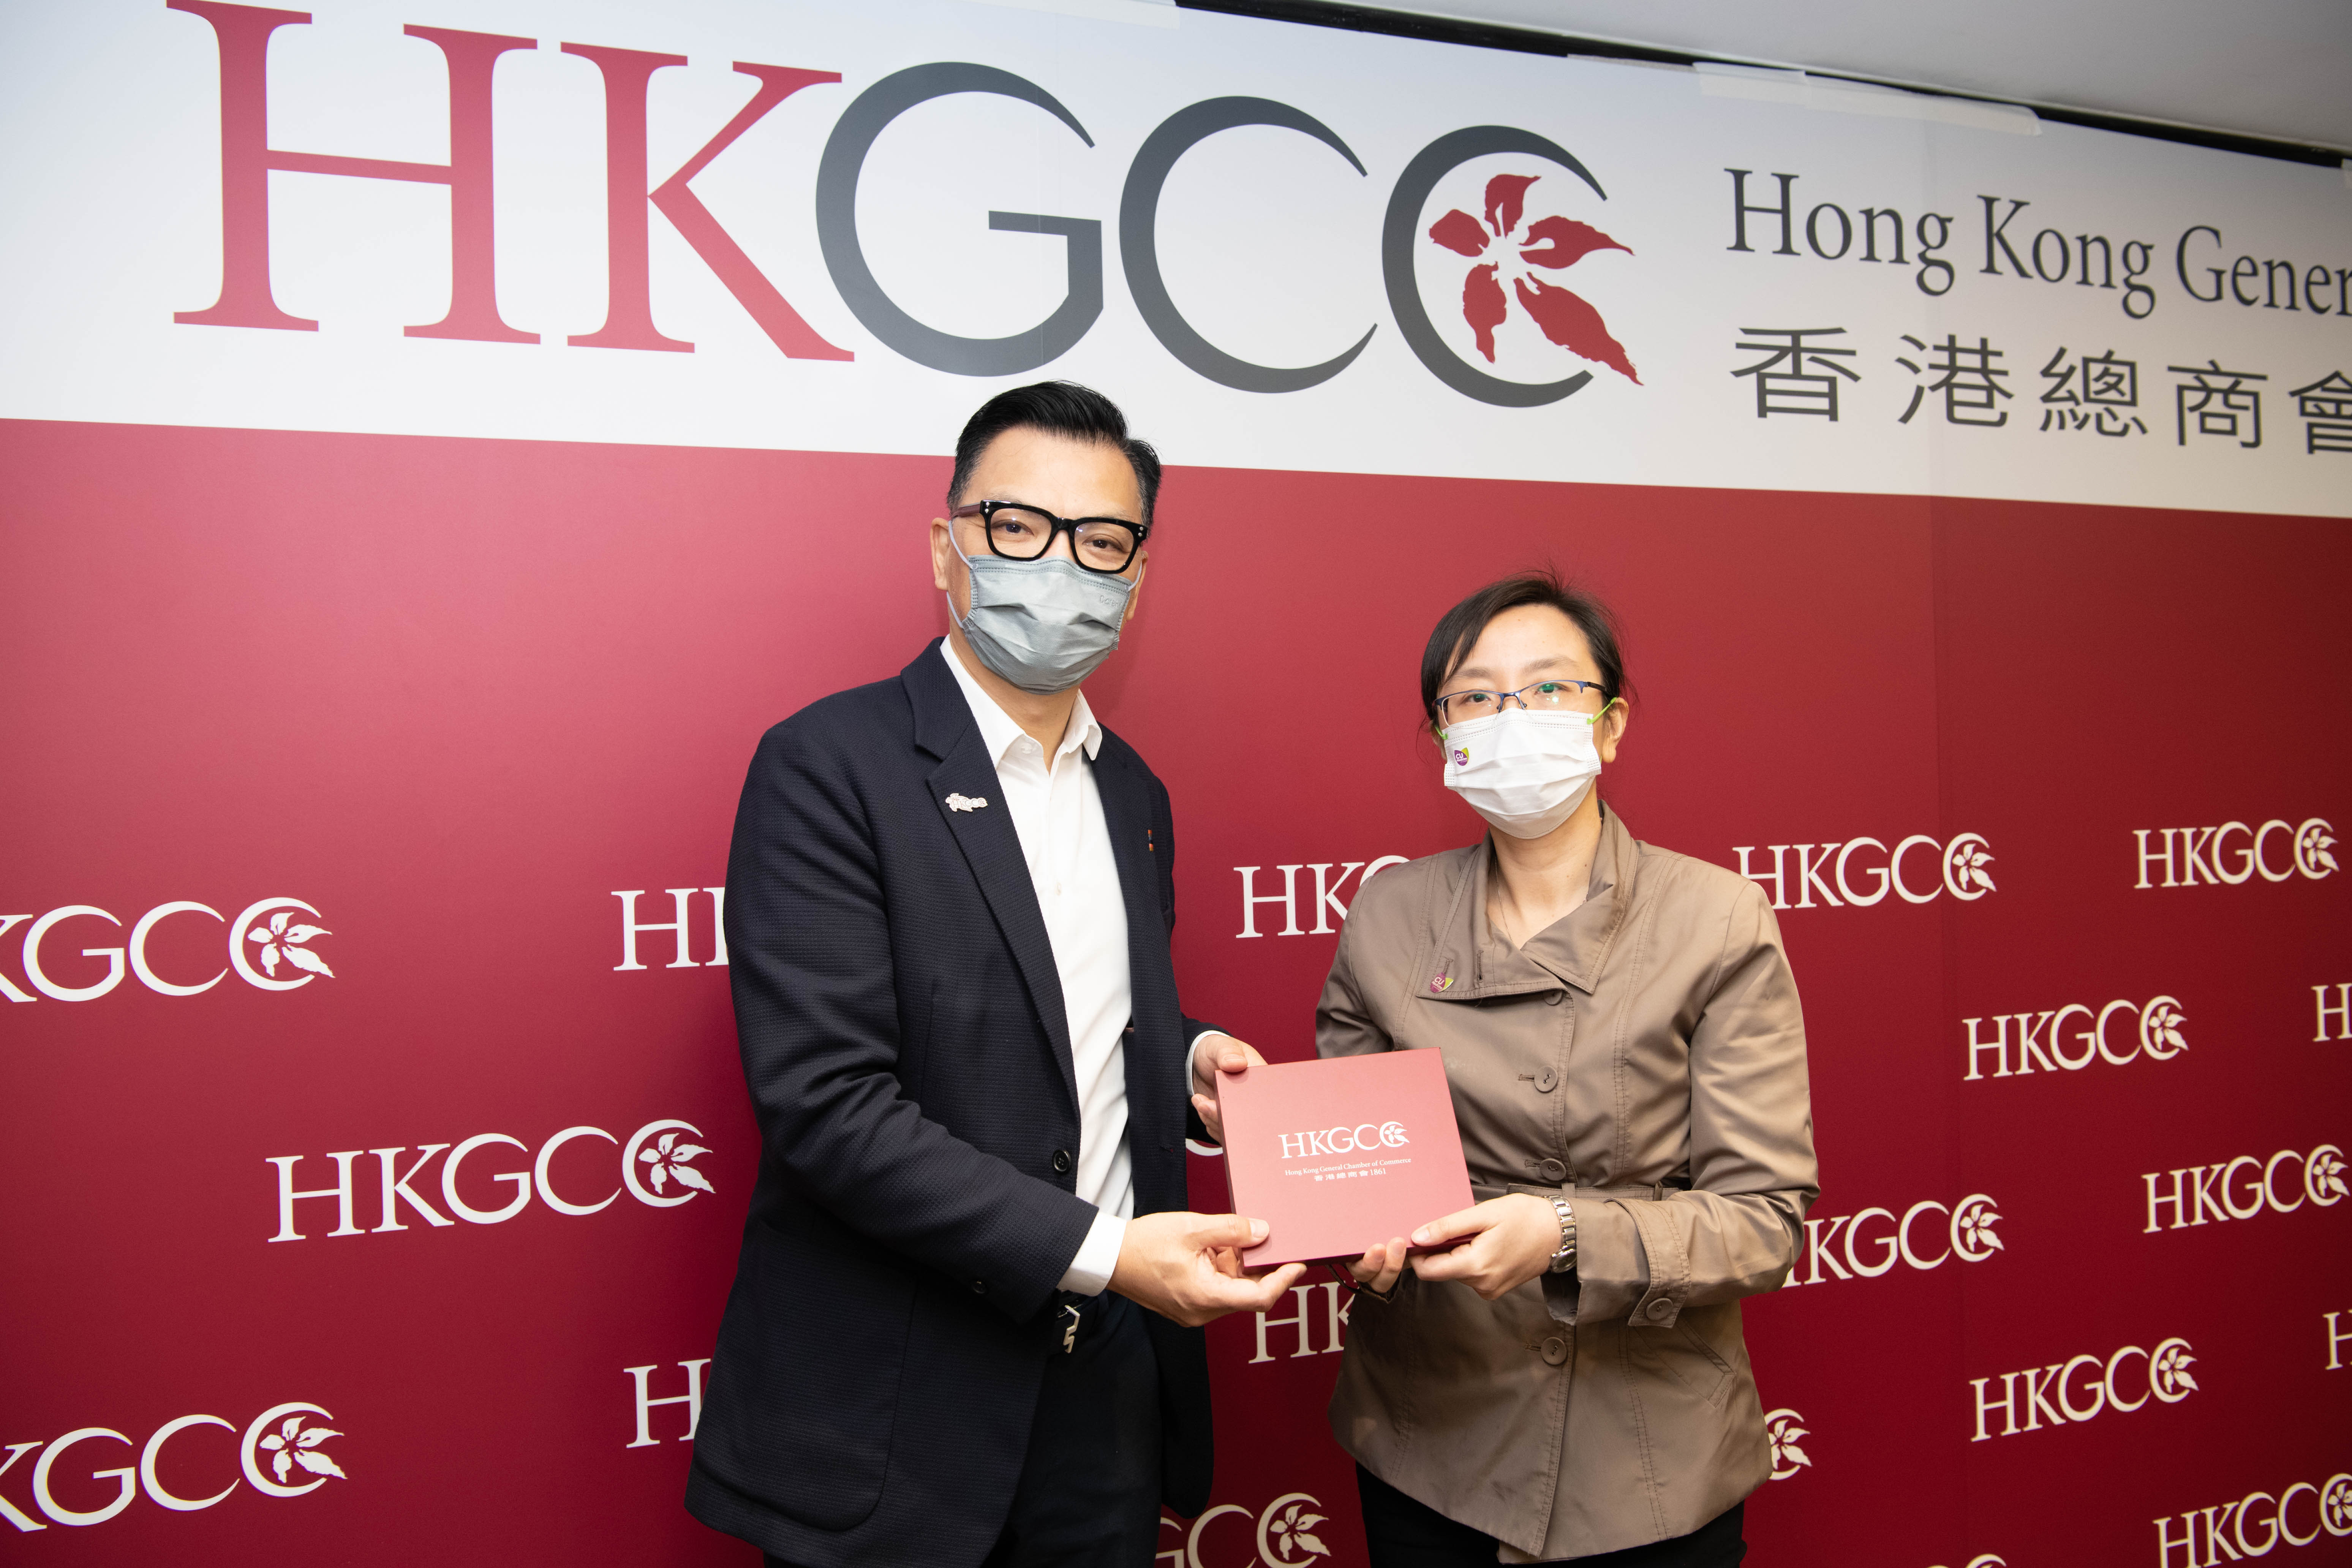 HKGCC Online Talk 2